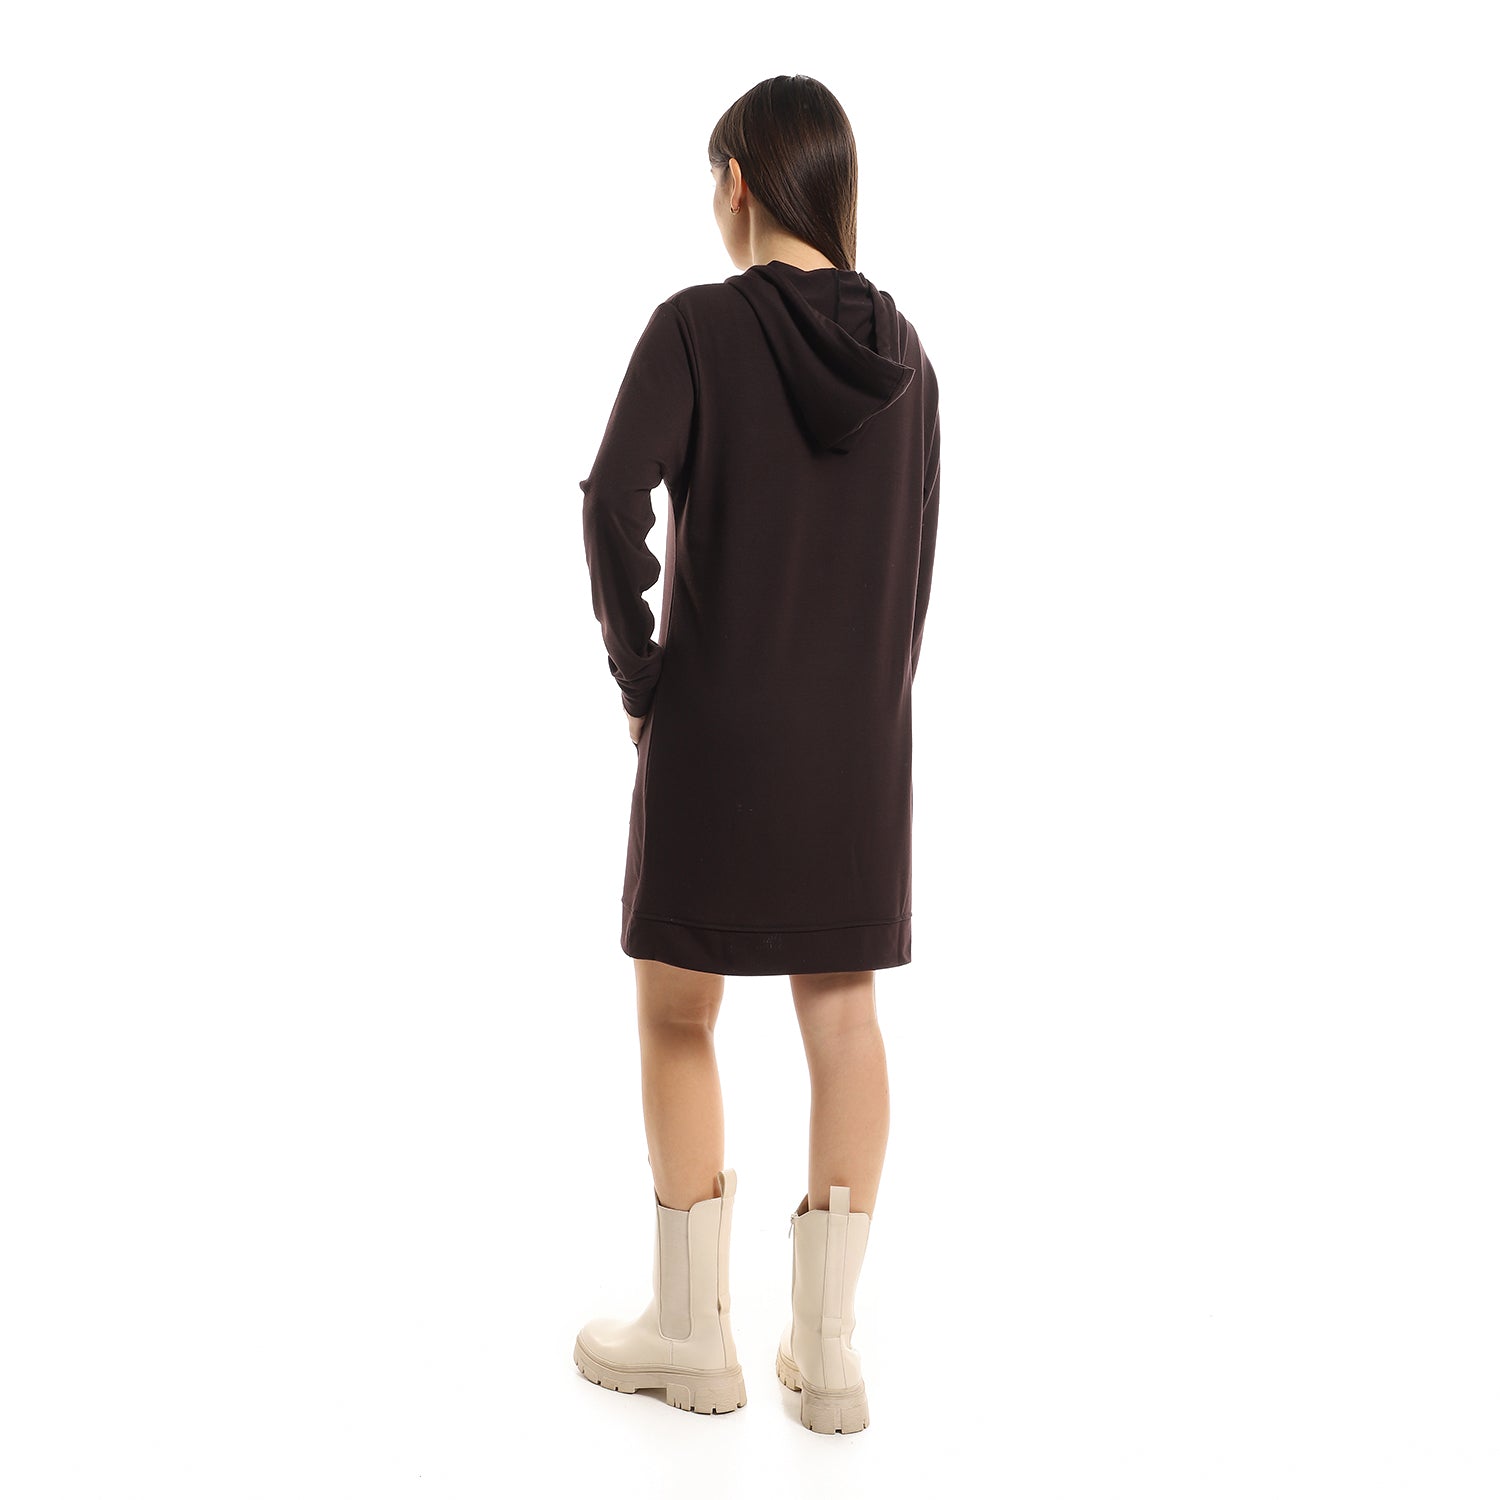 Kady Plain Long Soft Hooded Dress With Pockets